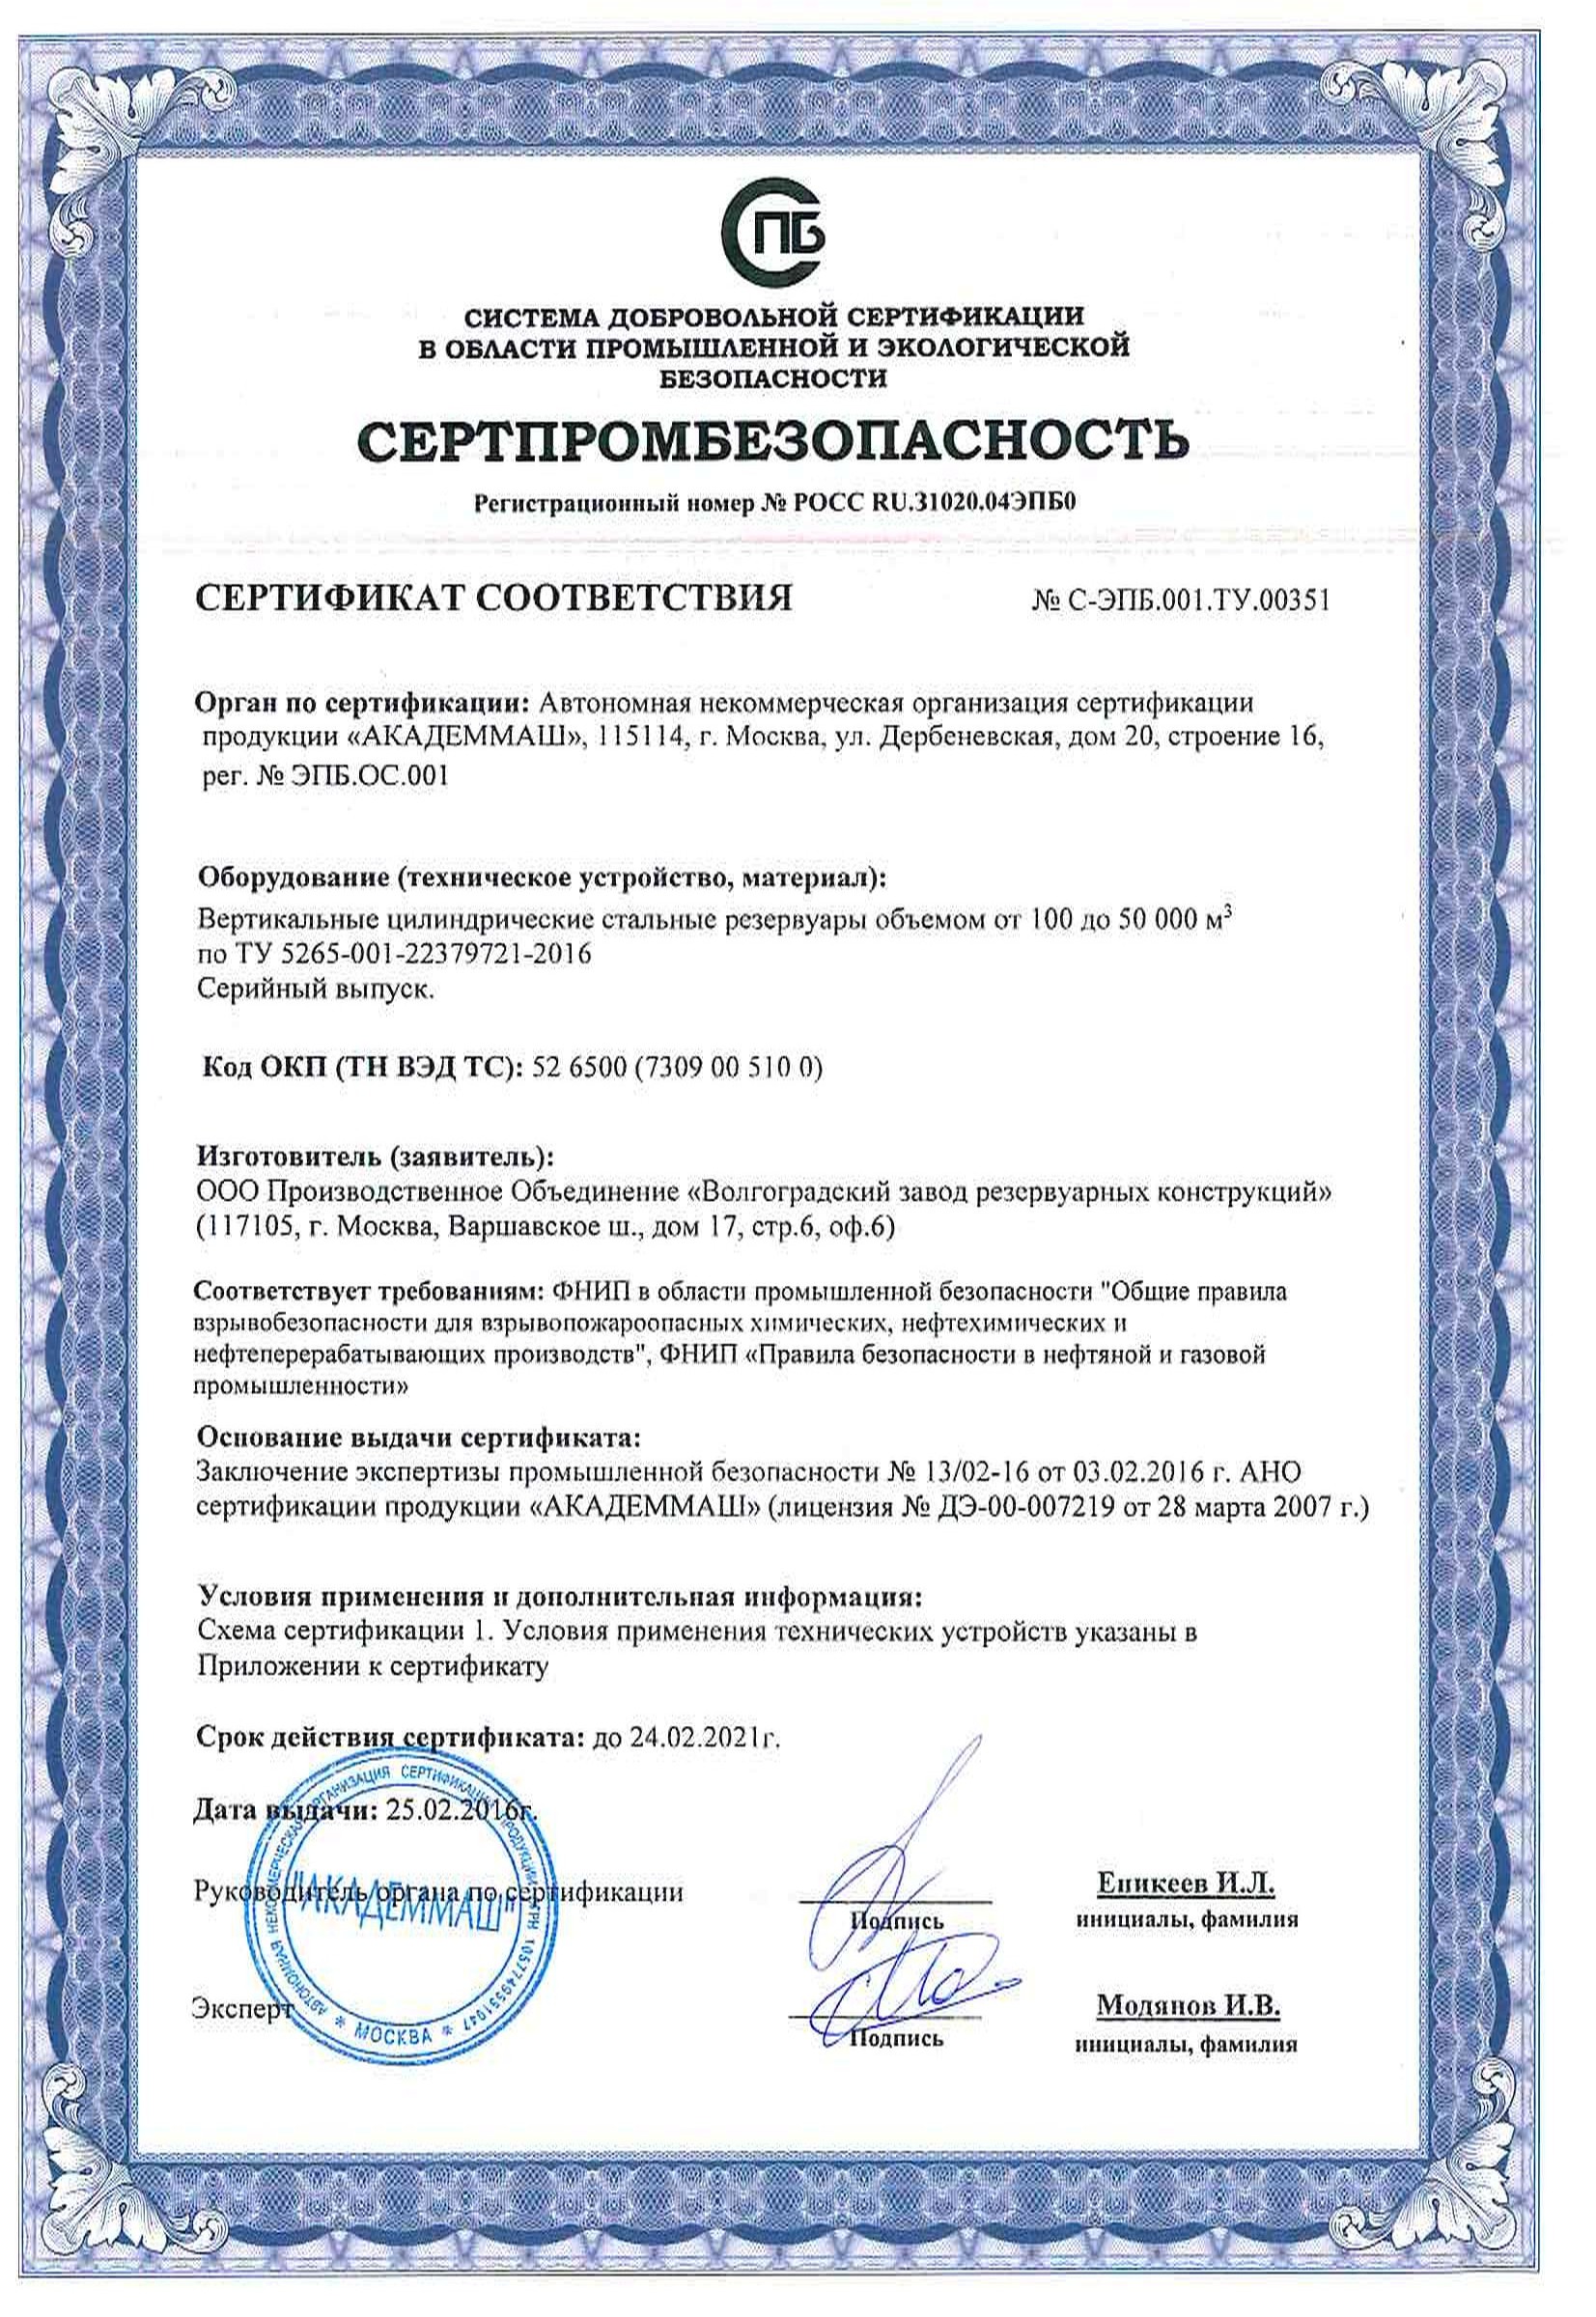 Сертификат соответствия на производство вертикальных цилиндрических стальных резервуаров